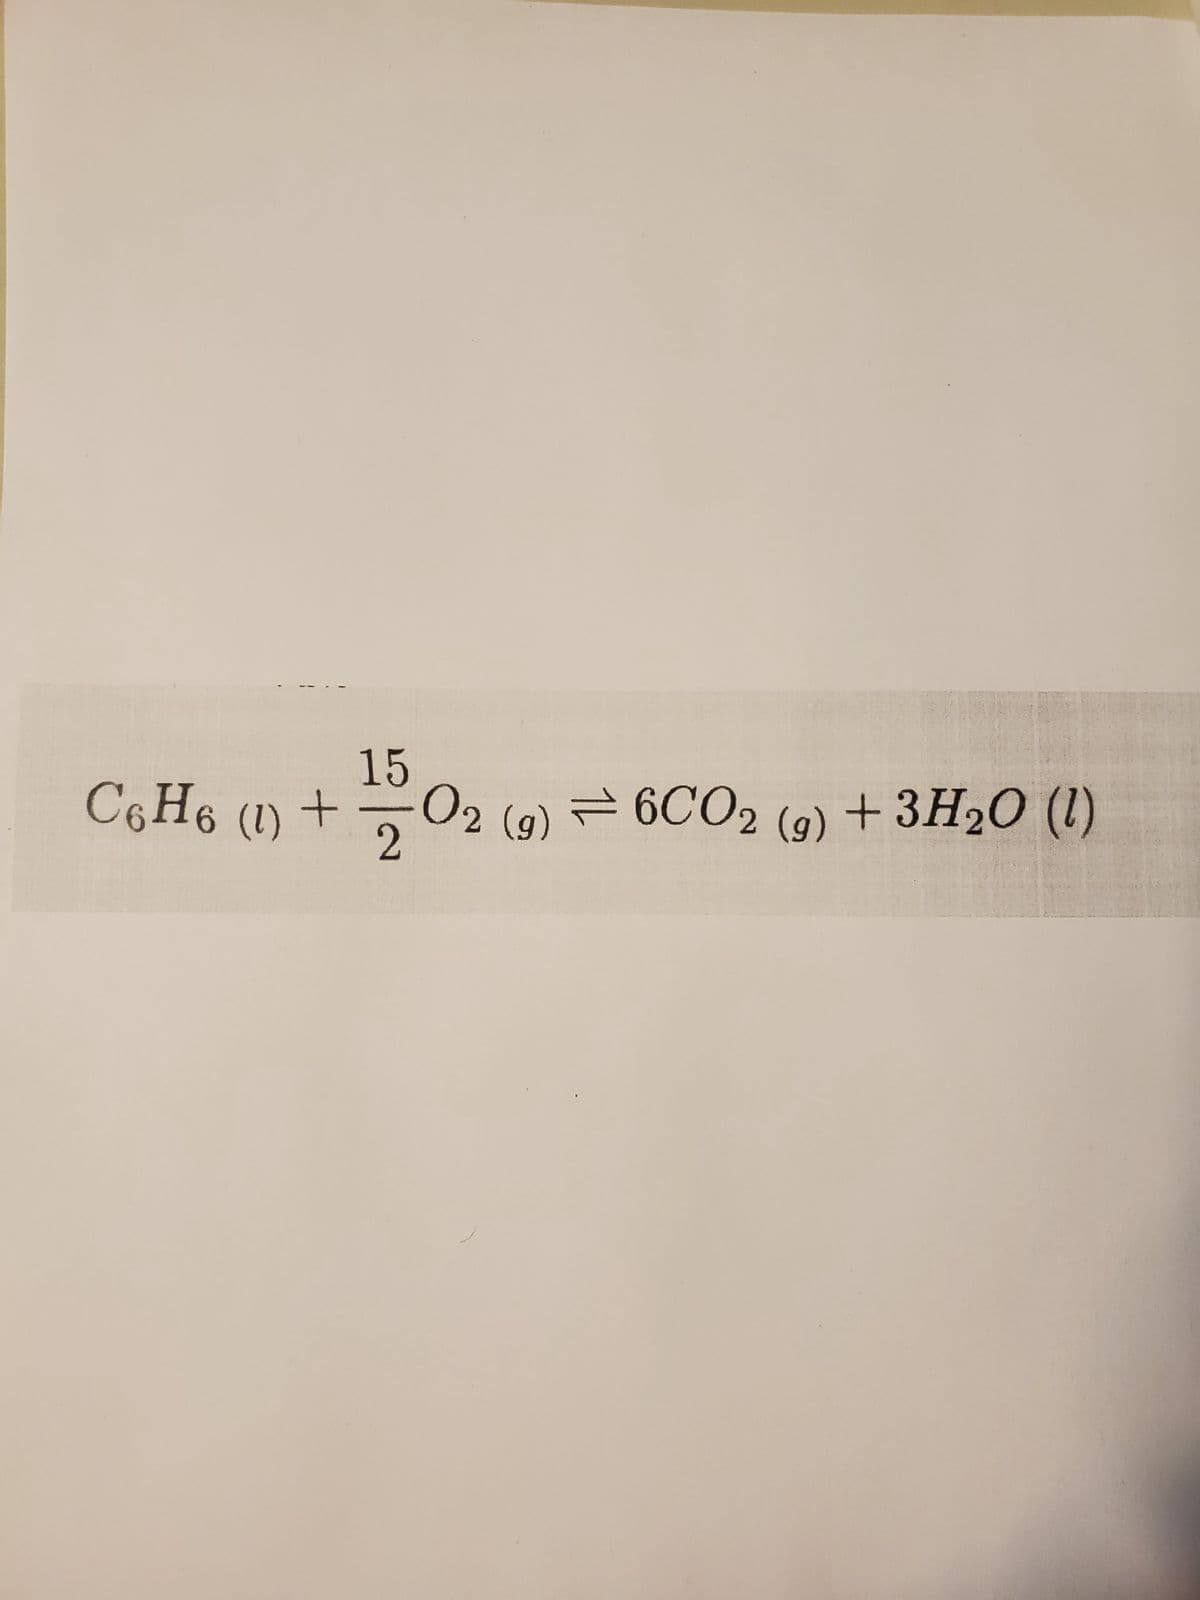 15
C6H6 (1) + O2 (9) 6CO2 (g) + 3H2O (1)